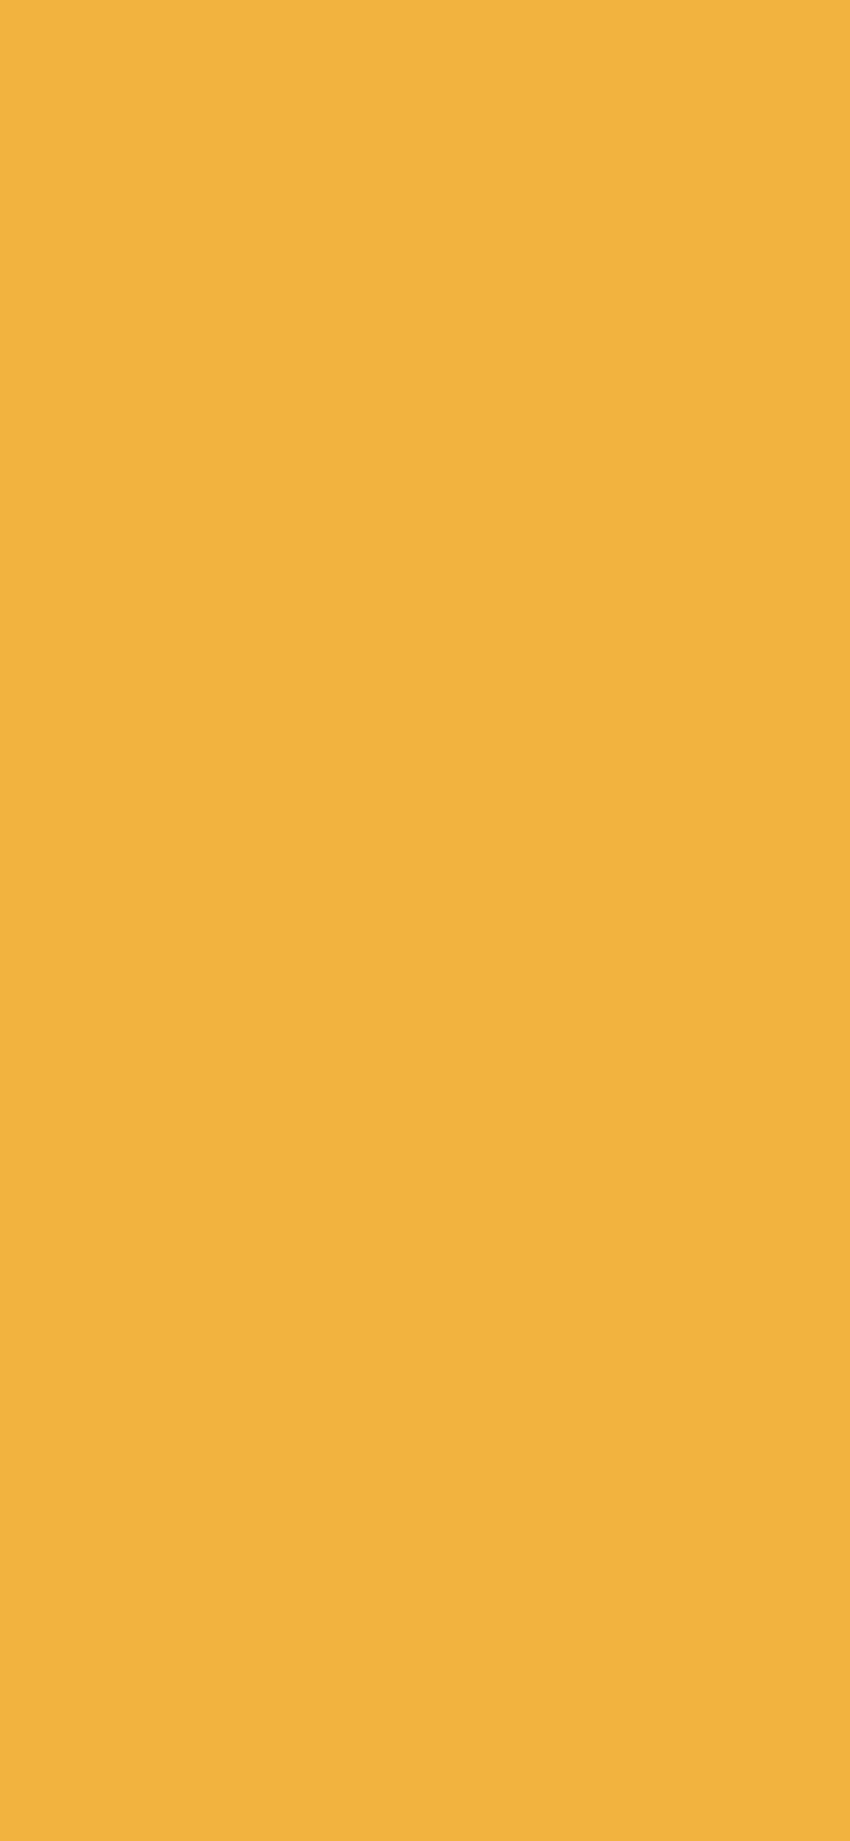 Mustard Yellow Twitter Header, & background, Mustard Yellow Aesthetic HD phone wallpaper